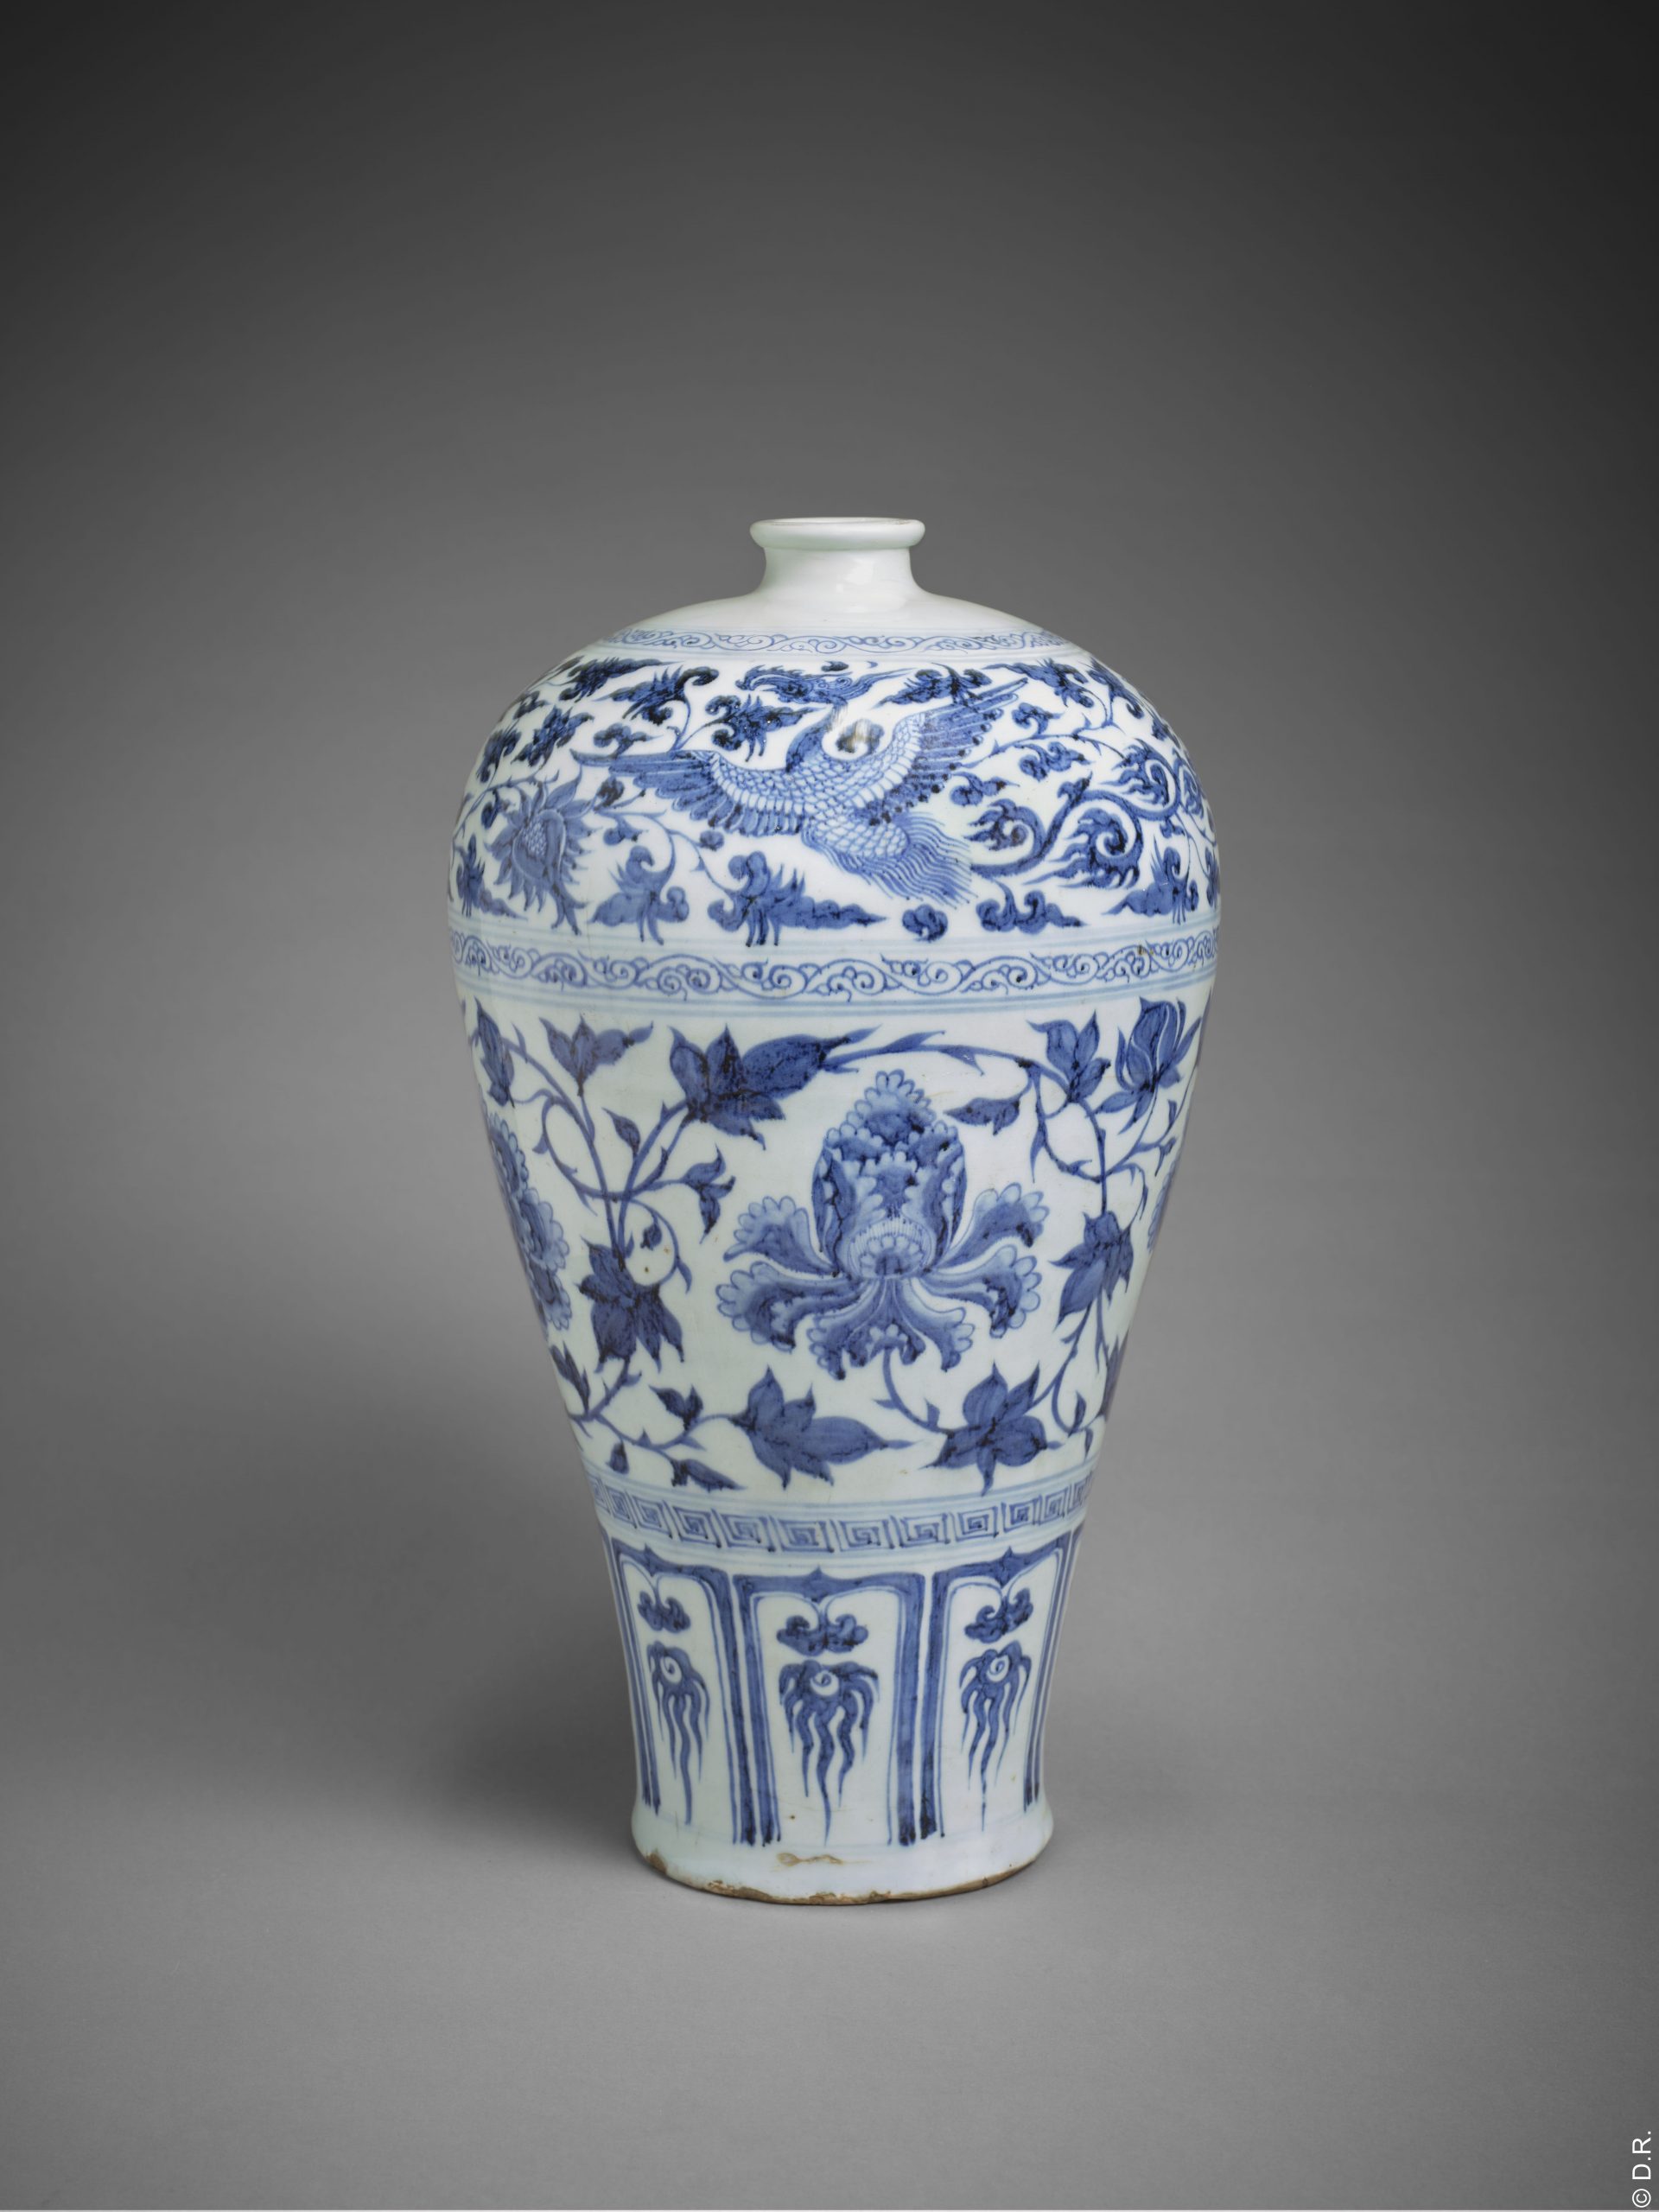 Un exceptionnel vase chinois à décor bleu et blanc du milieu du 14e siècle rejoint la collection du Musée national des arts asiatiques